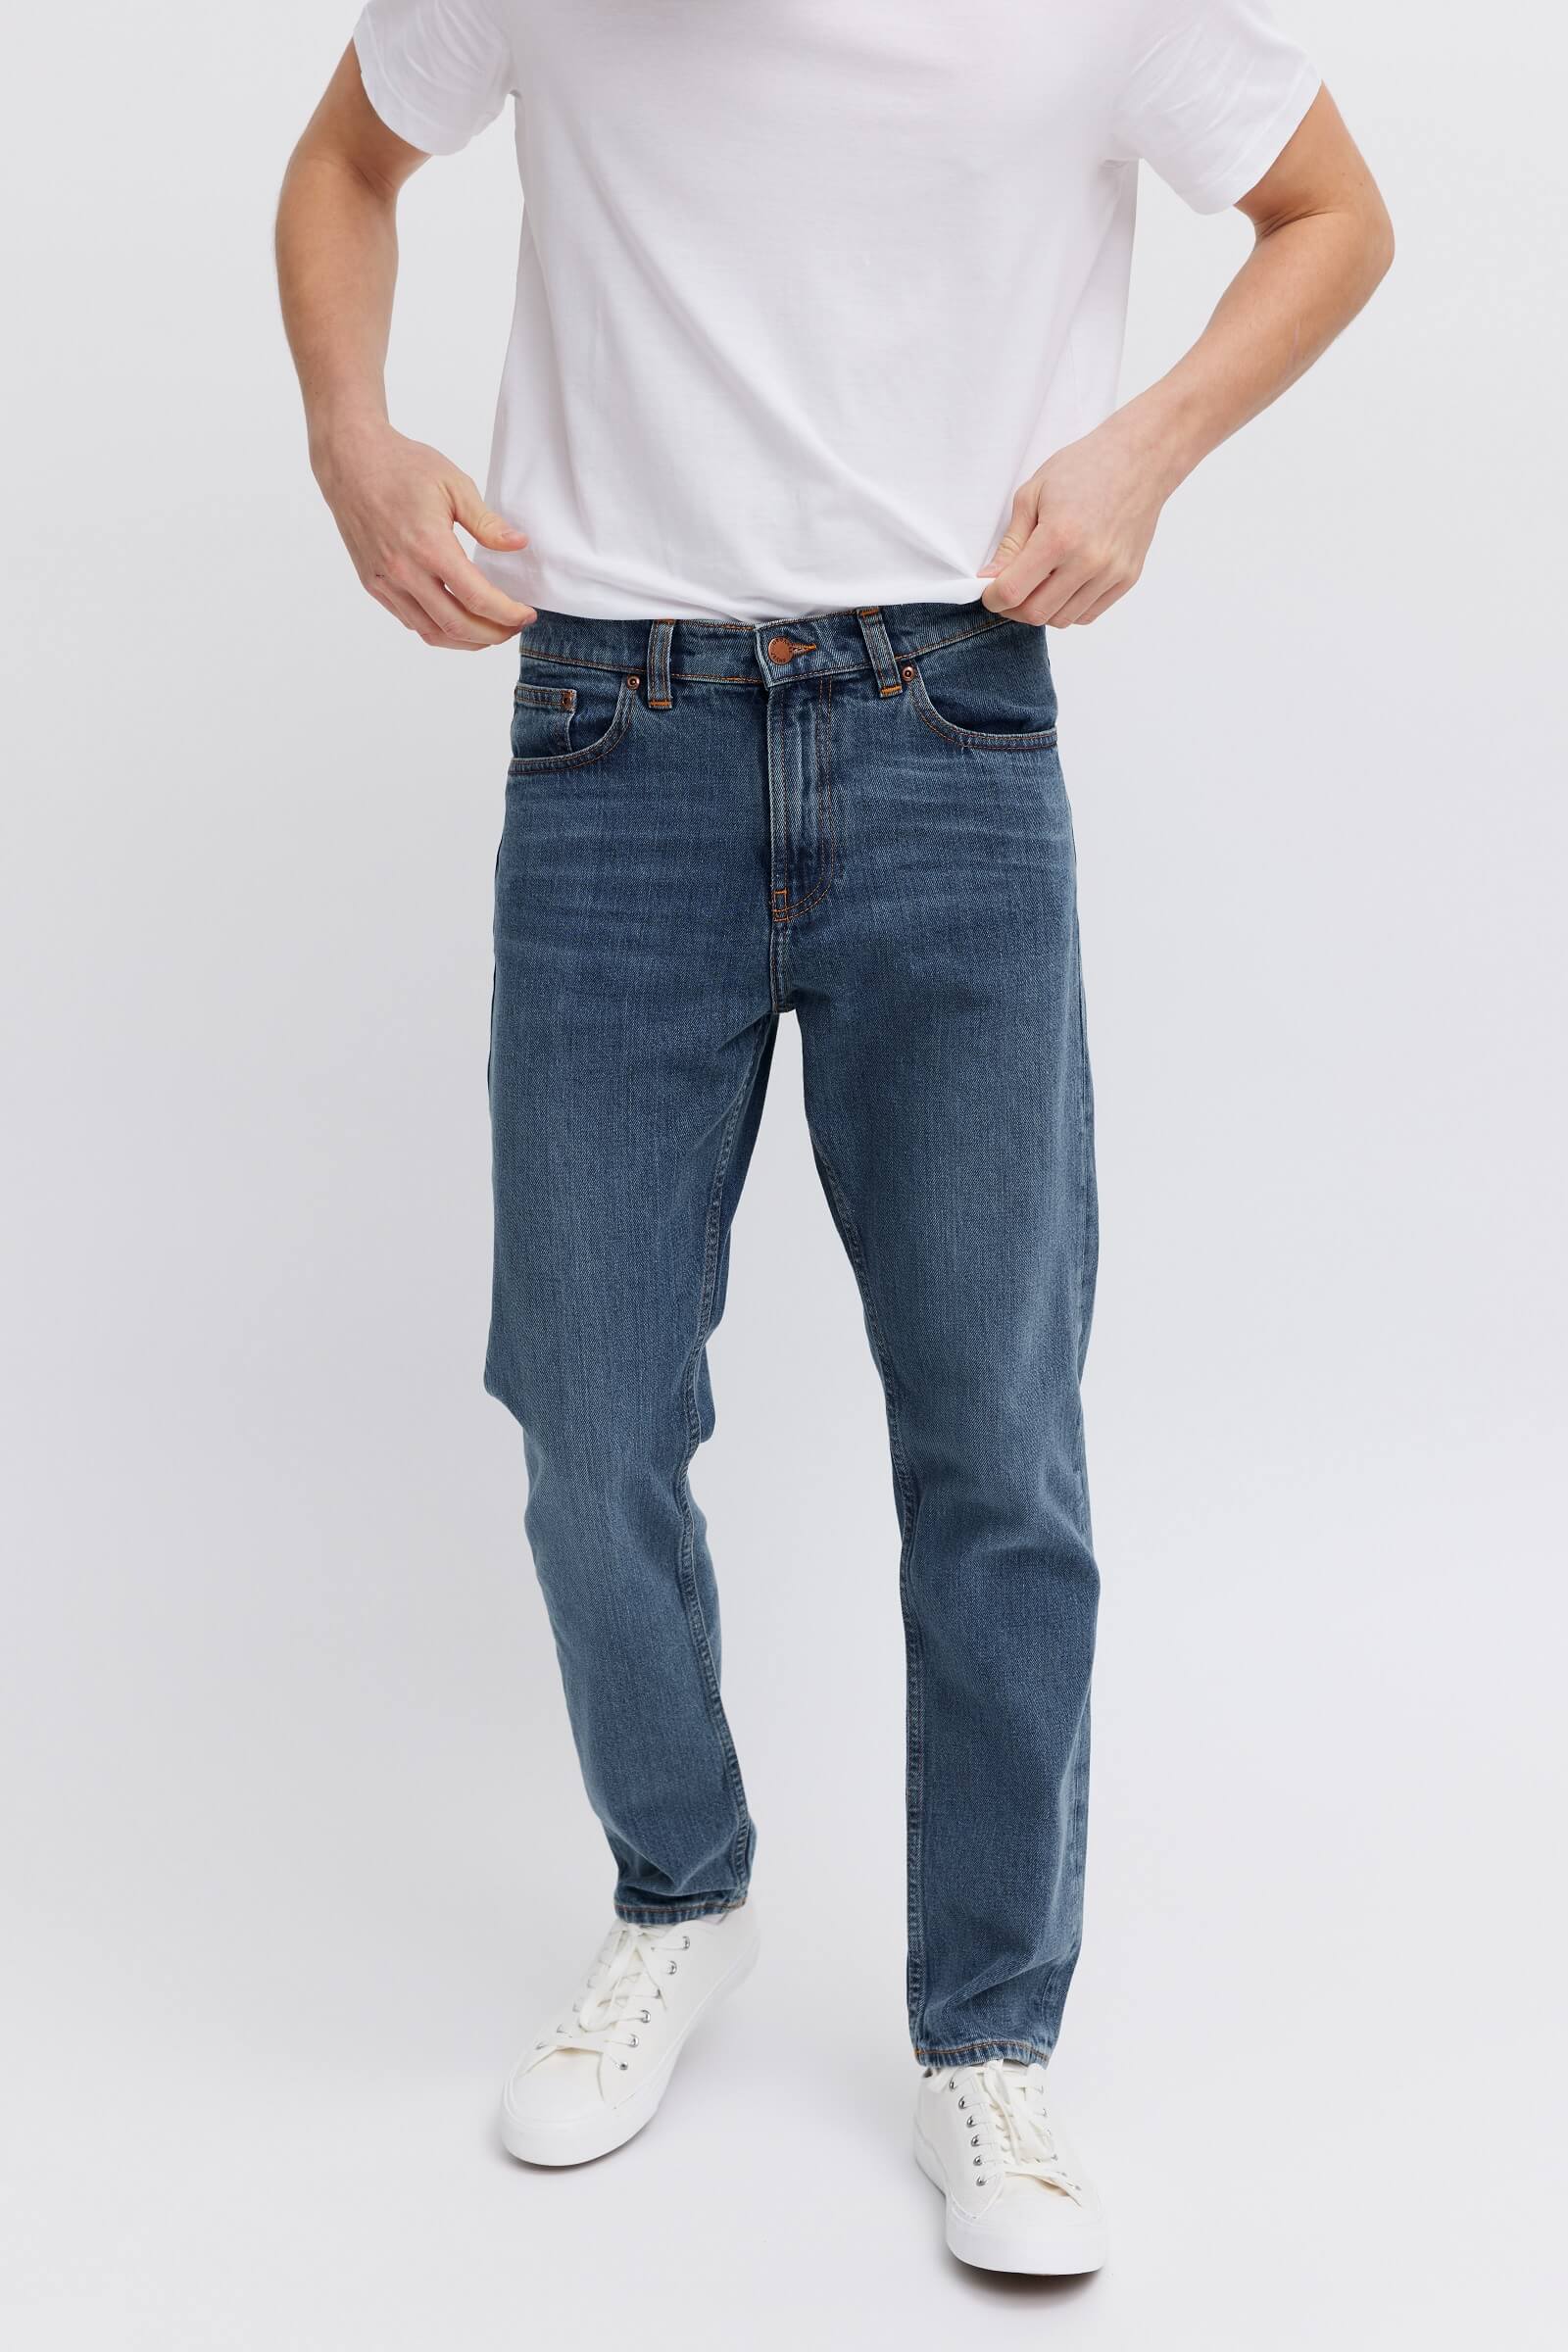 Vegan jeans for men